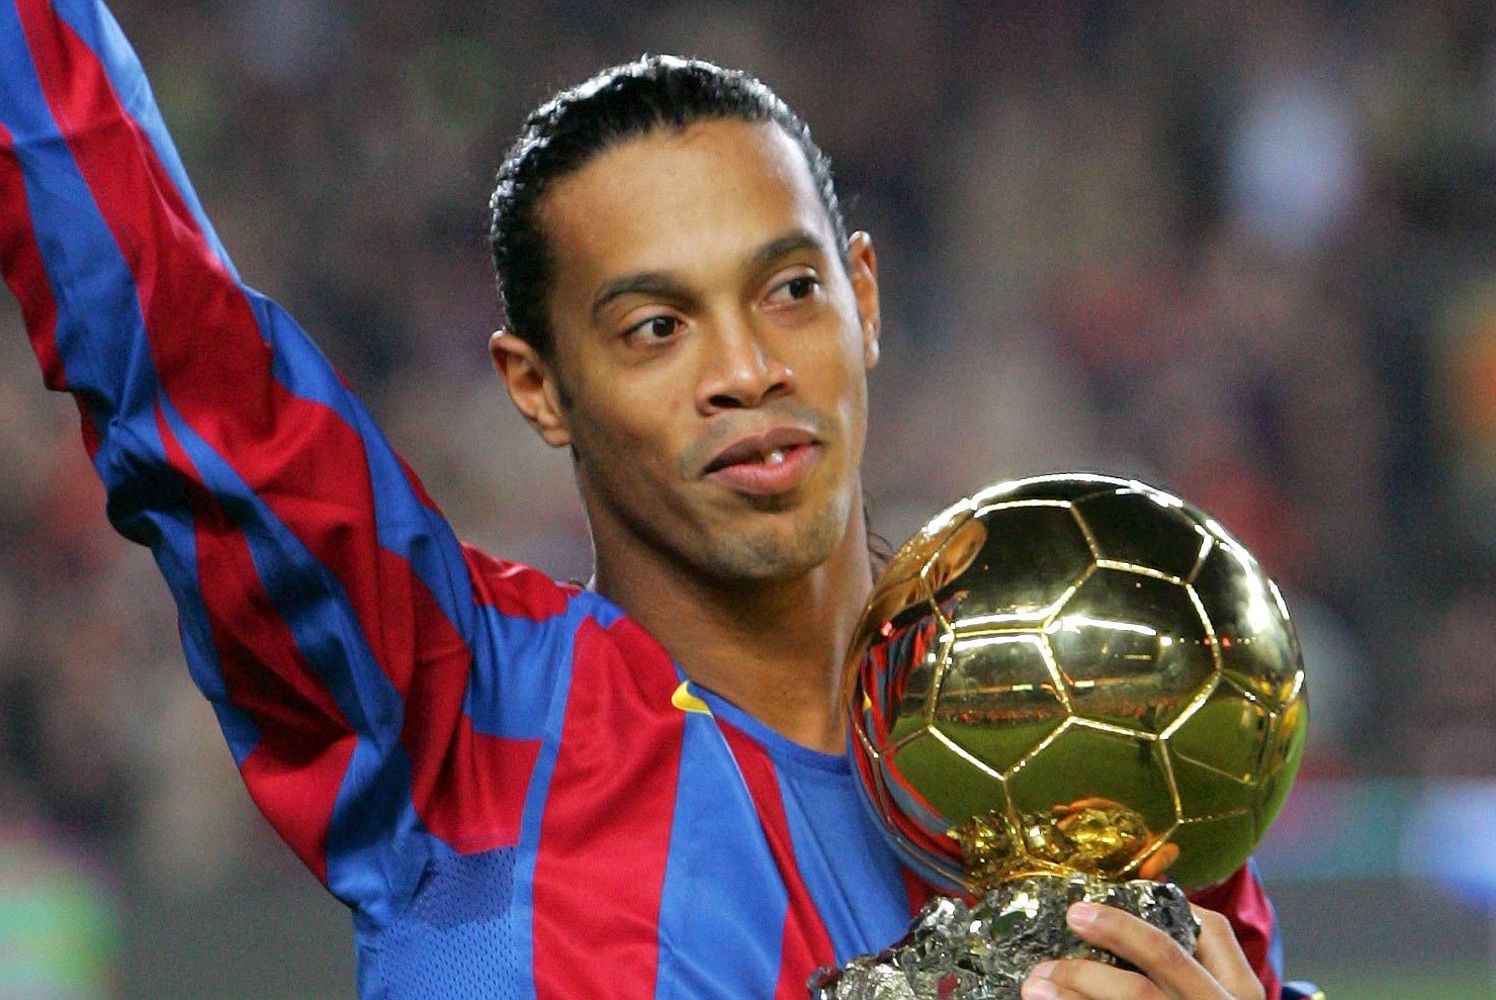 Brésil/Covid-19 : Test positif pour Ronaldinho